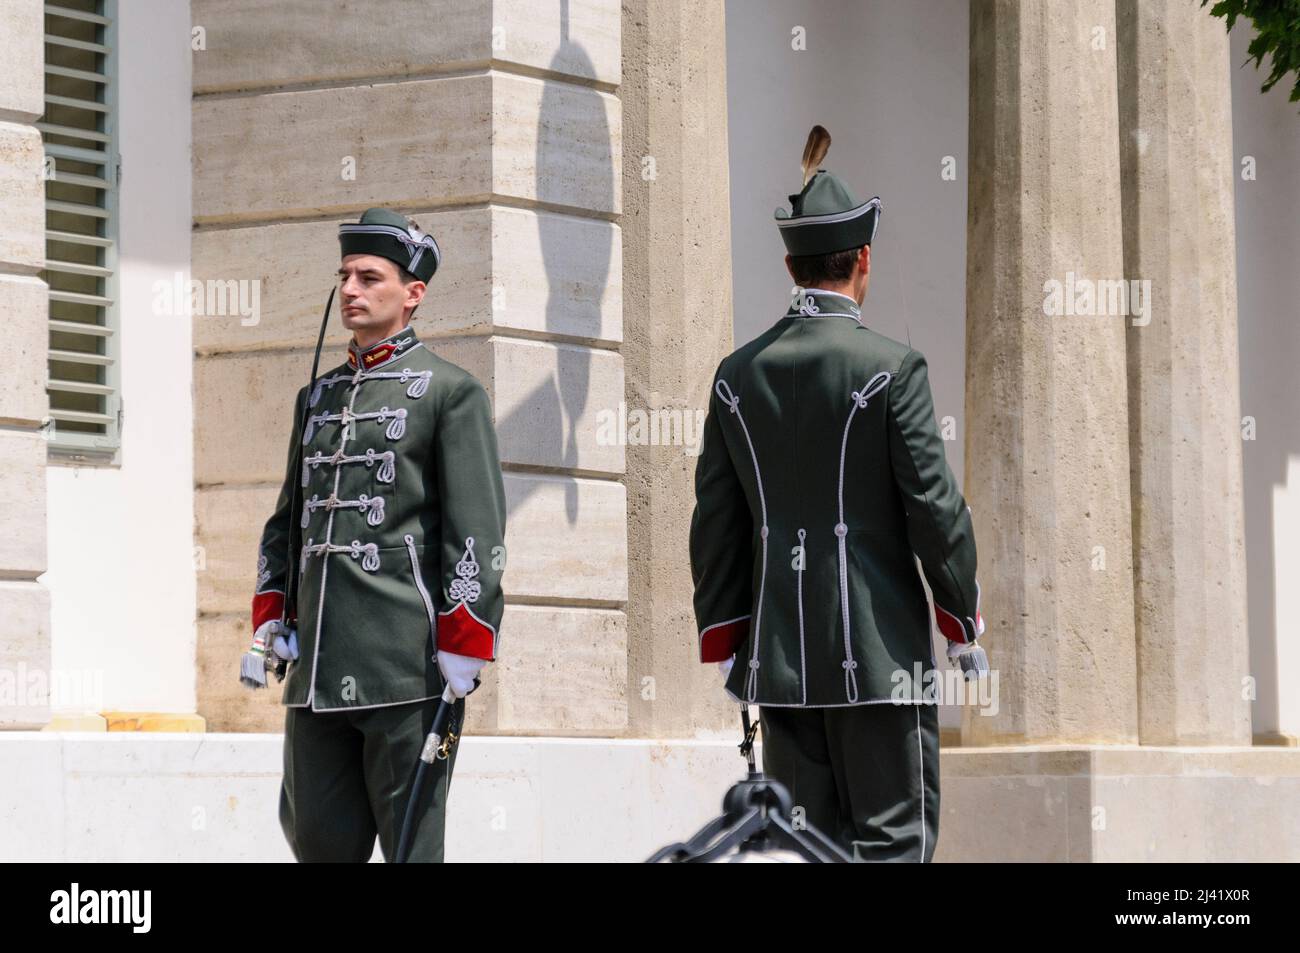 Budapest, Hungría. 13th de julio de 2008. Los soldados vestidos con uniforme tradicional realizan la ceremonia del cambio de guardia en el Palacio de Sandor, Castillo de Buda. Foto de stock